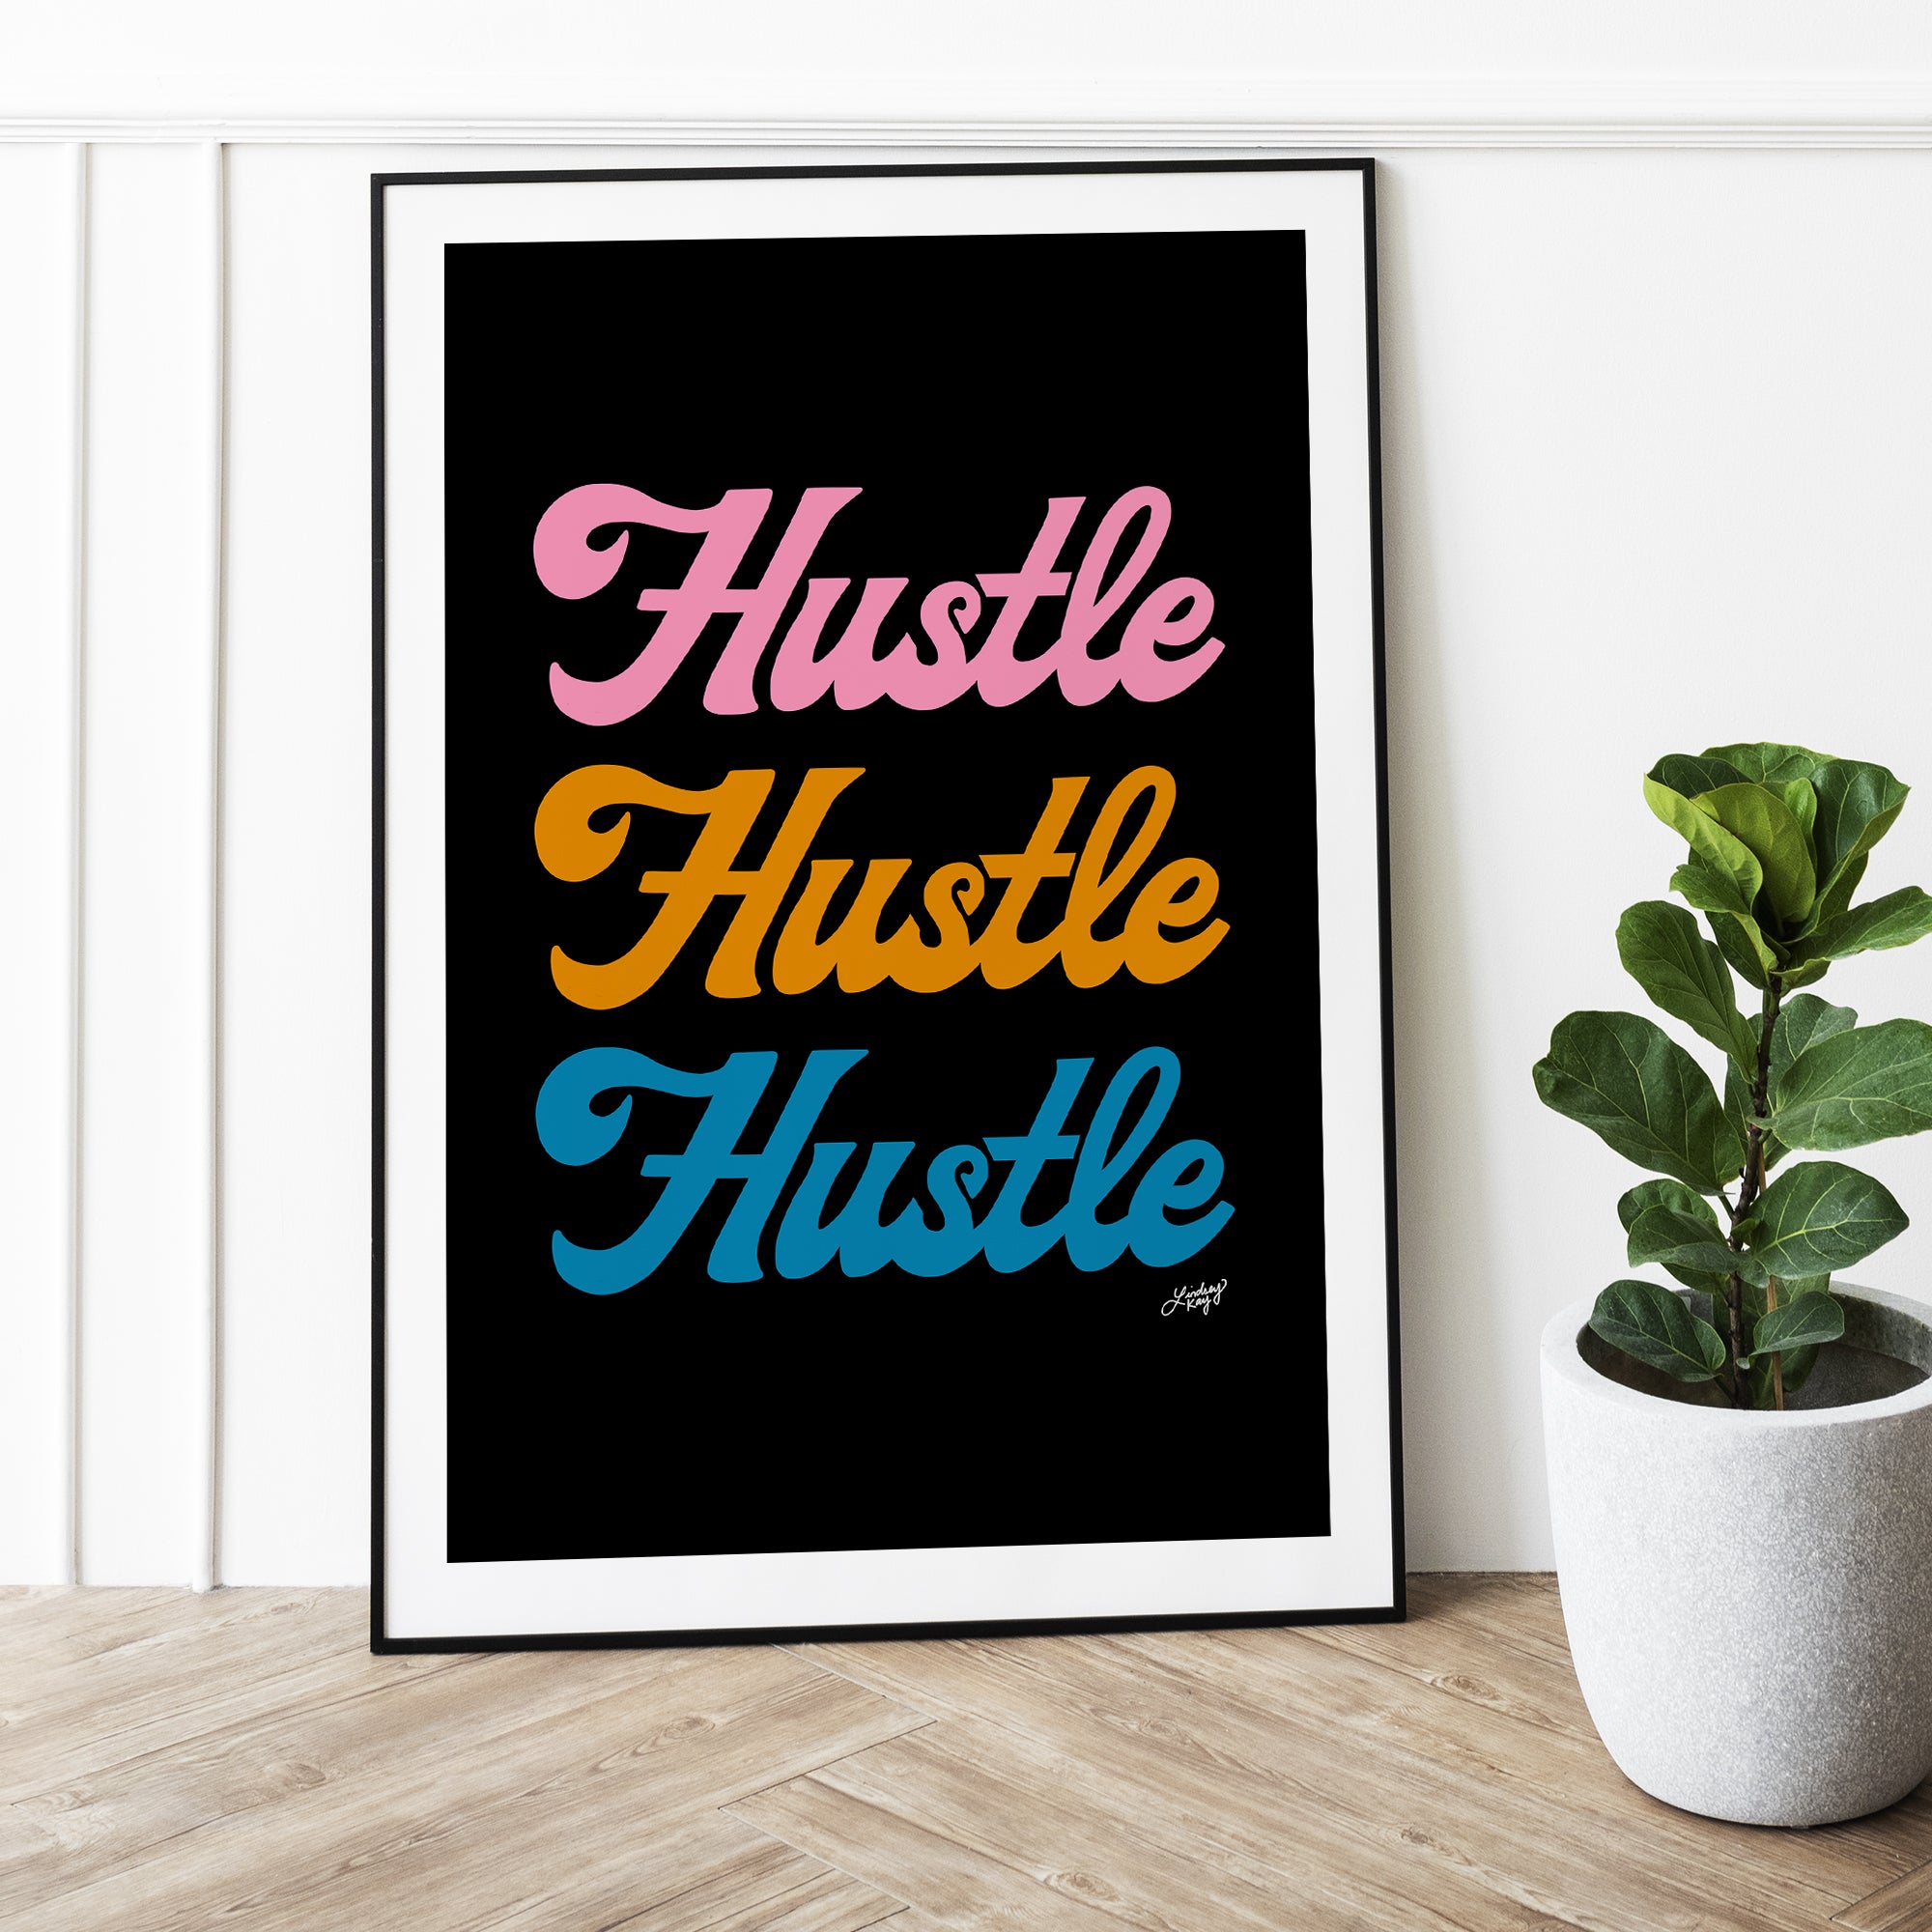 Hustle Hustle Hustle (Paleta Retro) - Impresión de arte